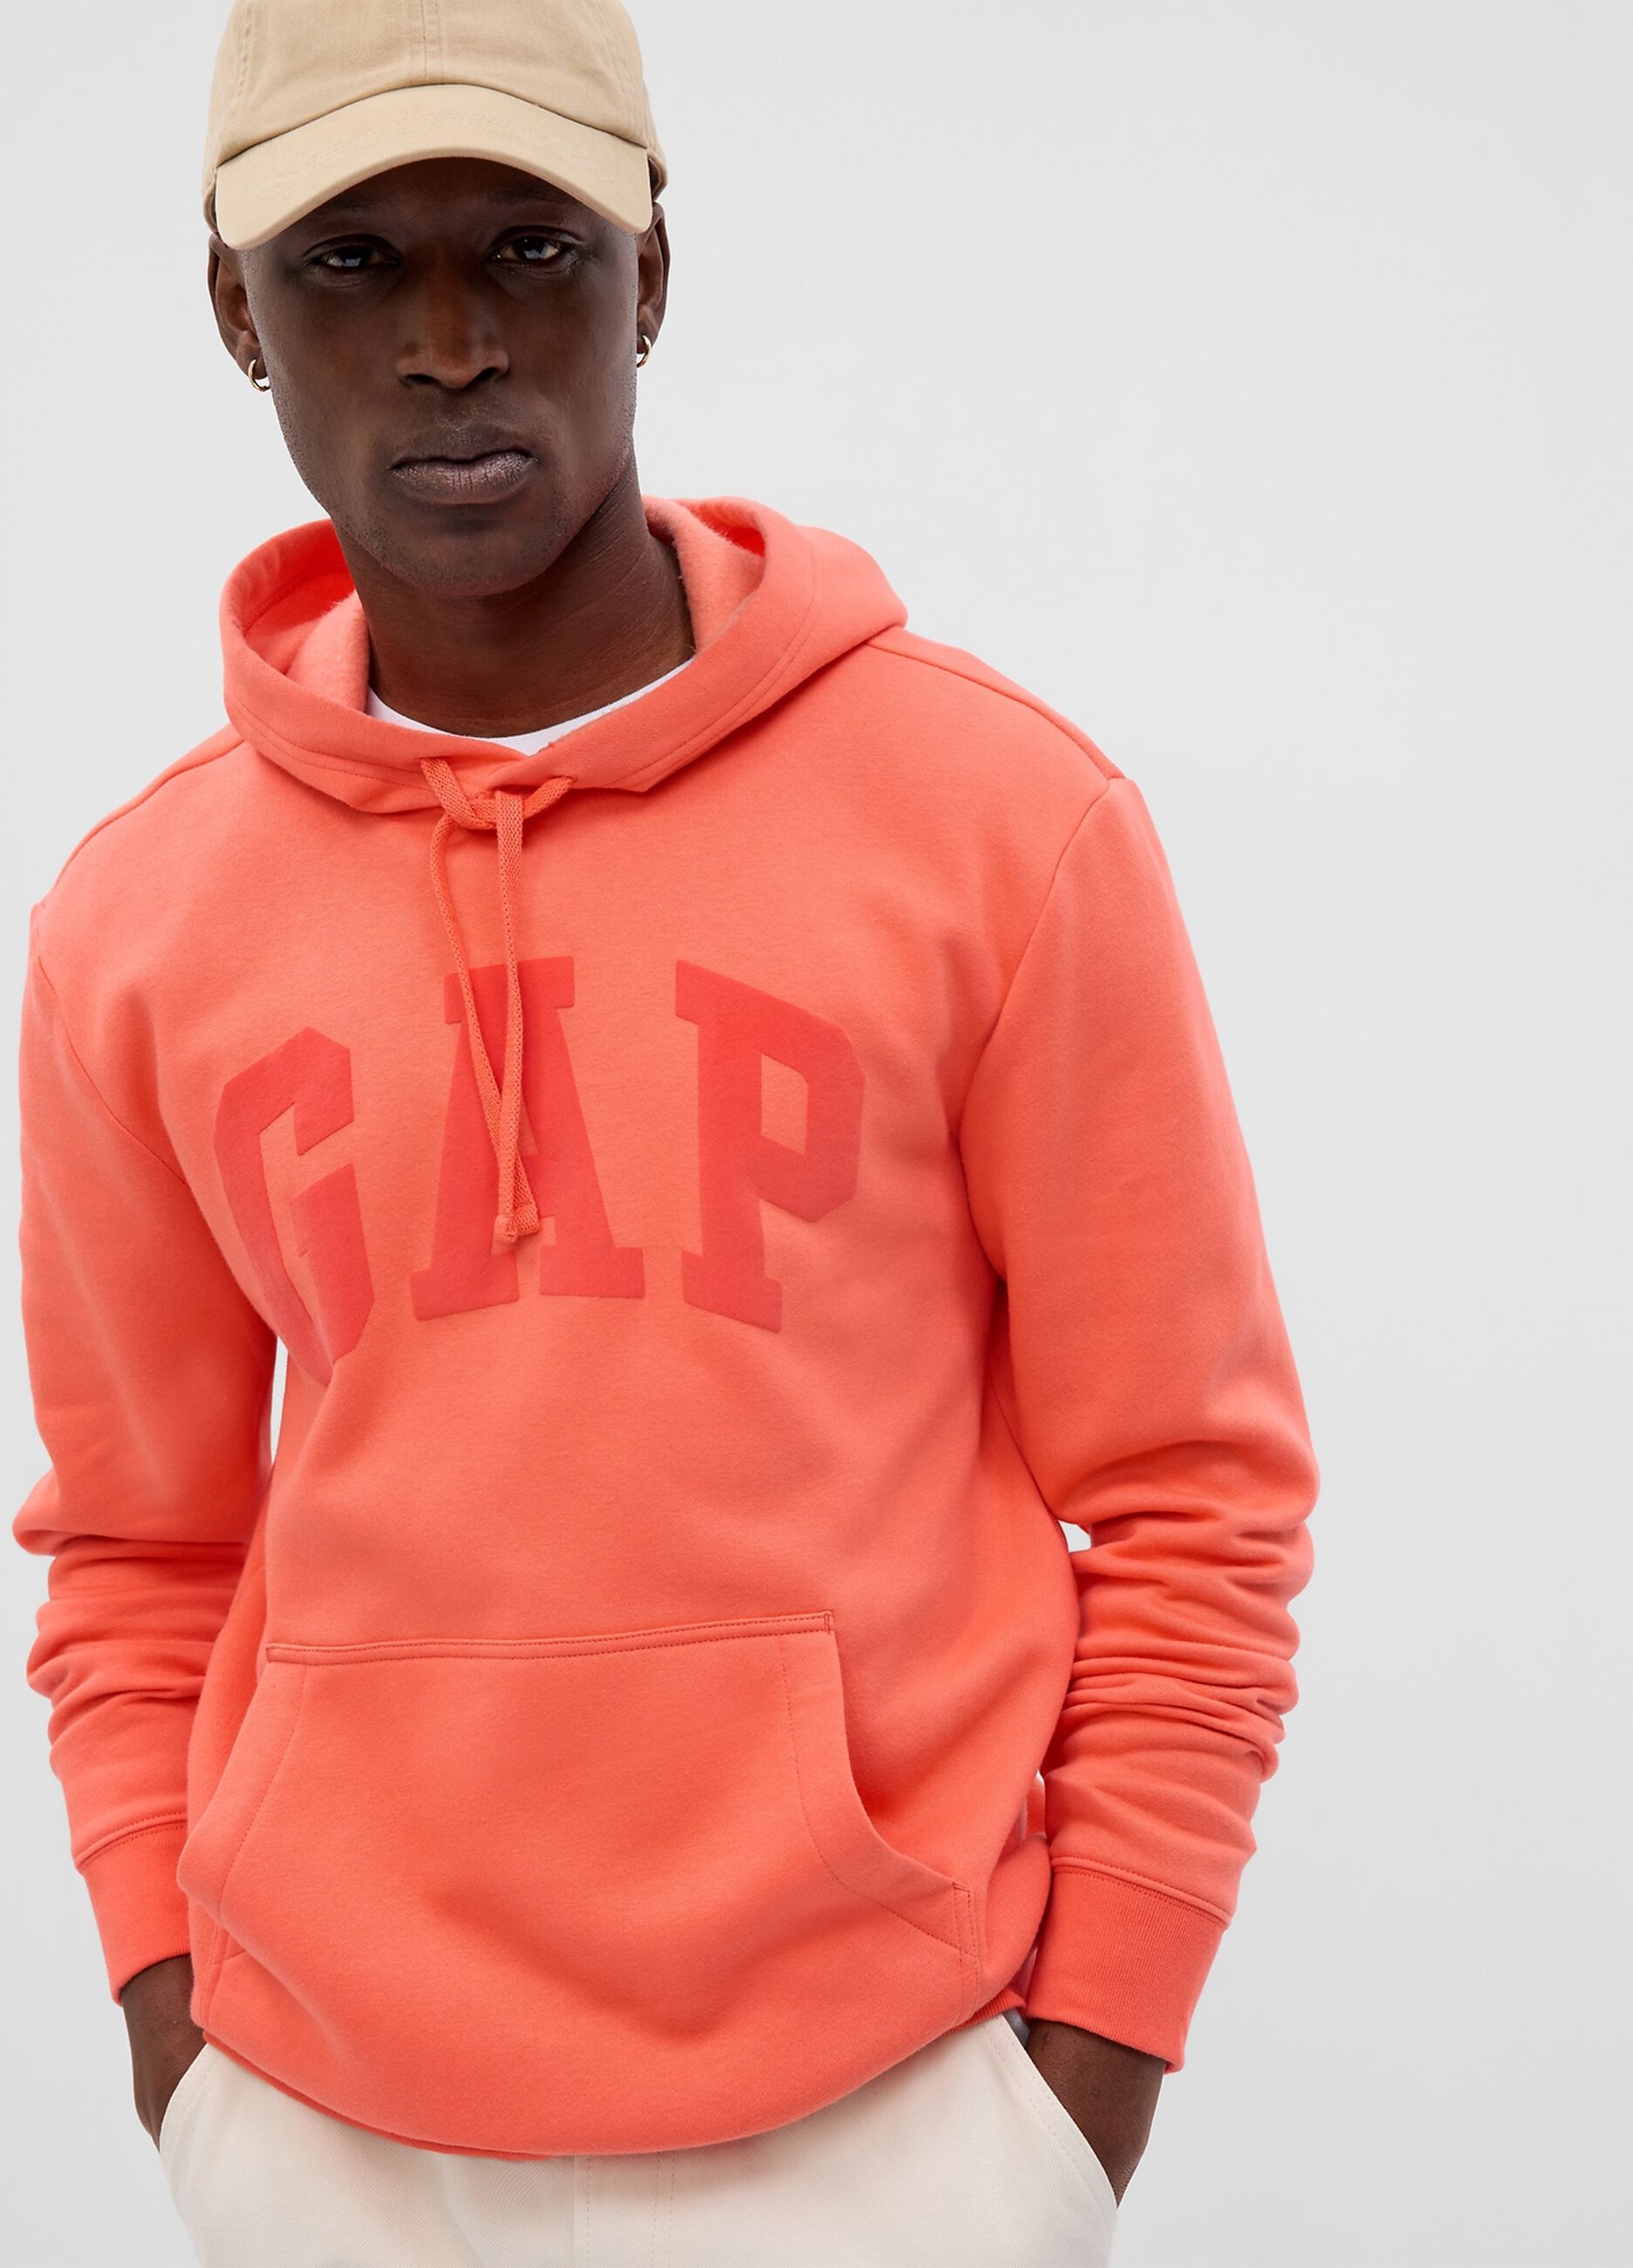 gap orange hoodie